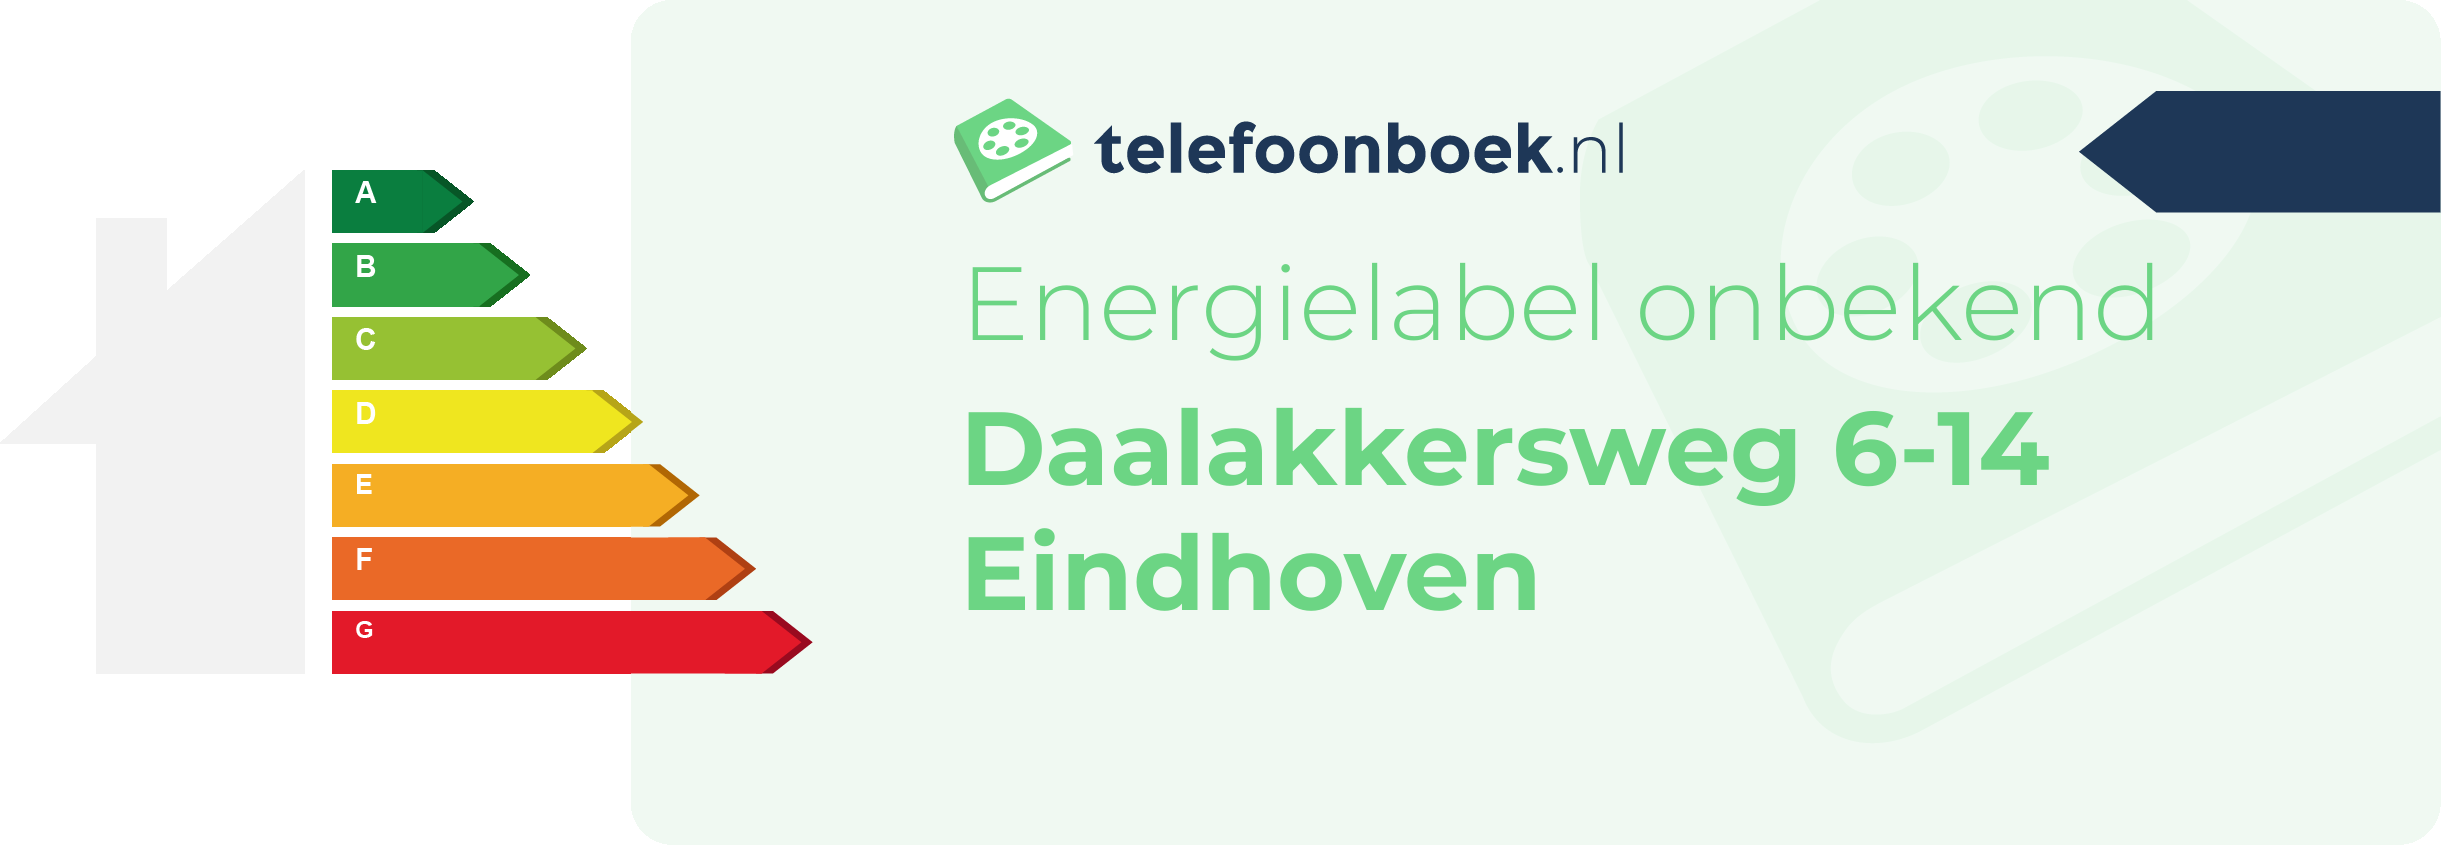 Energielabel Daalakkersweg 6-14 Eindhoven